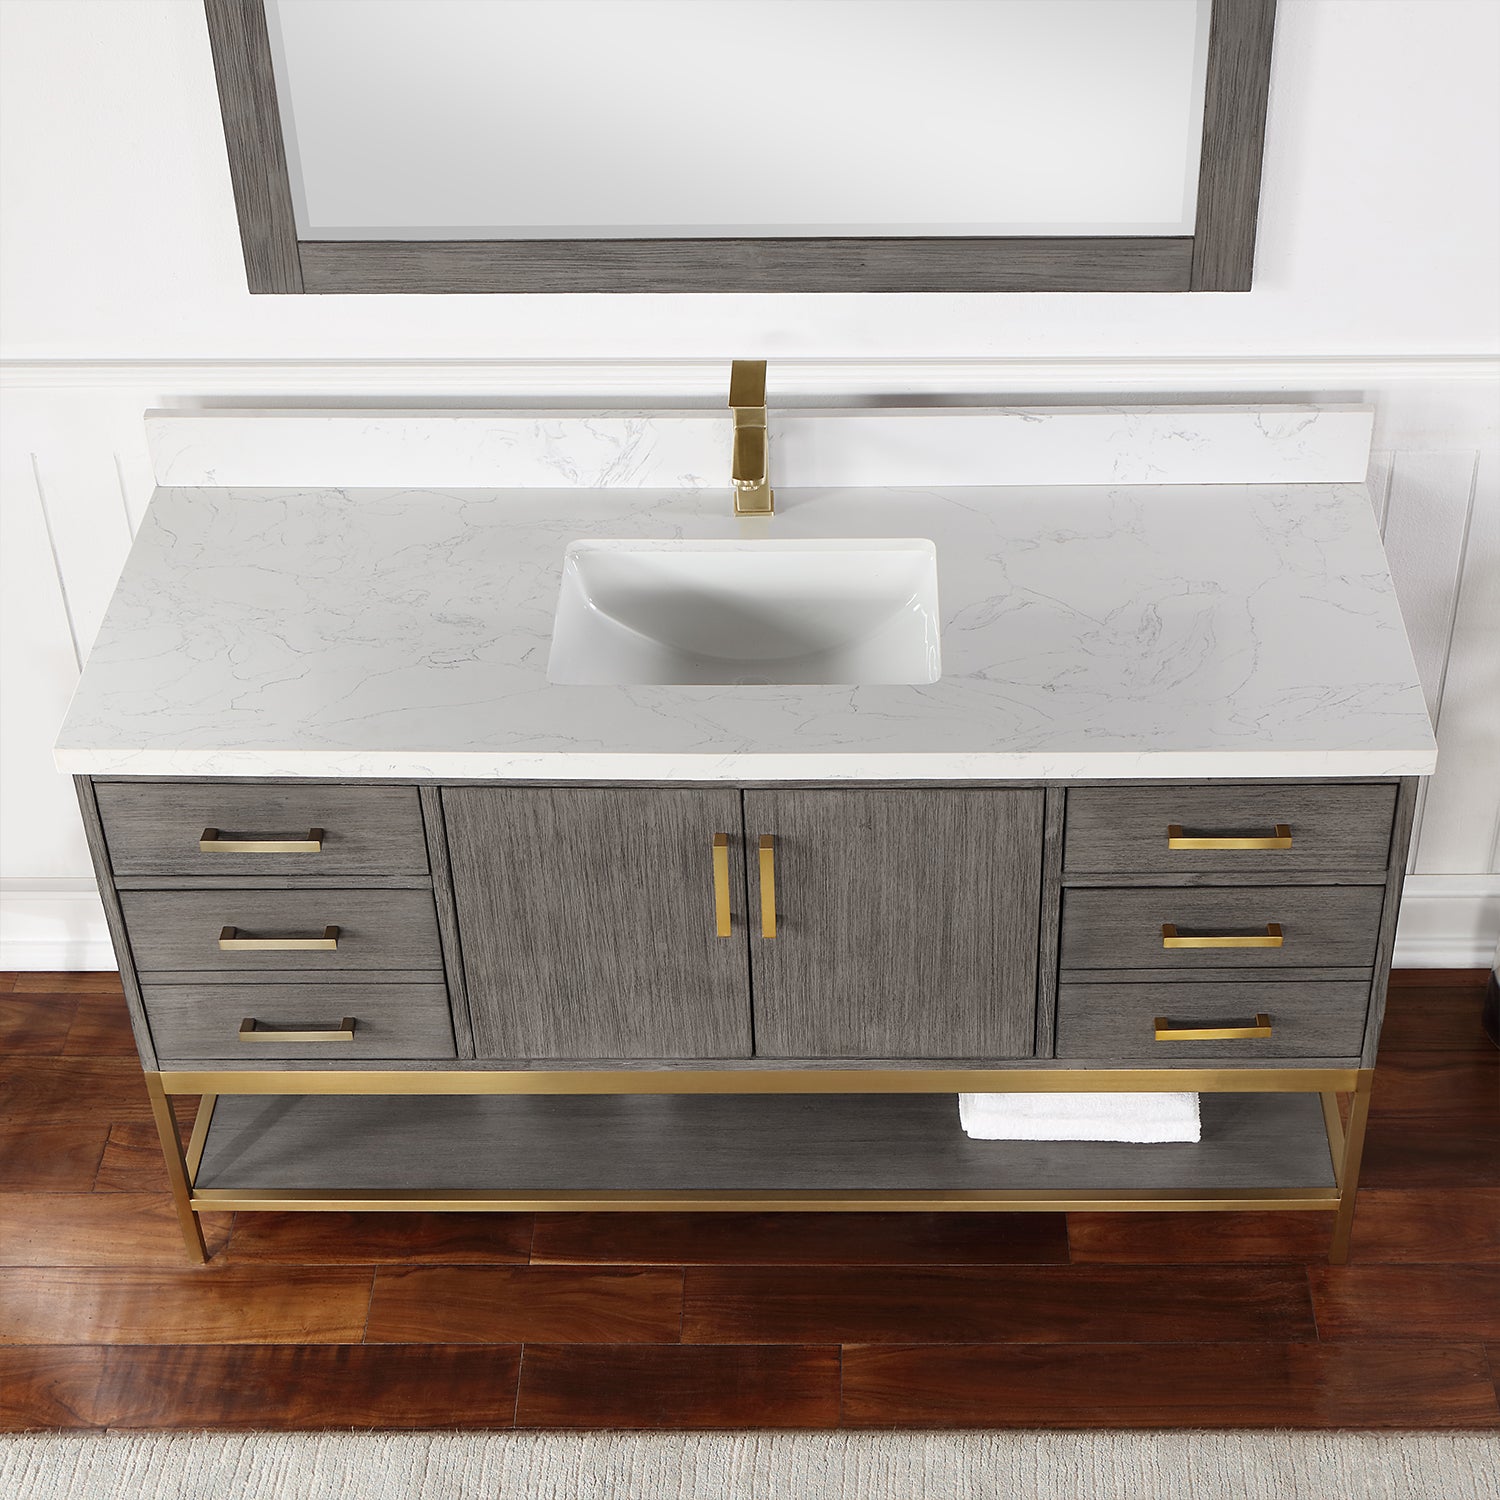 Wildy 60" Single Bathroom Vanity Set with Grain White Composite Stone Countertop